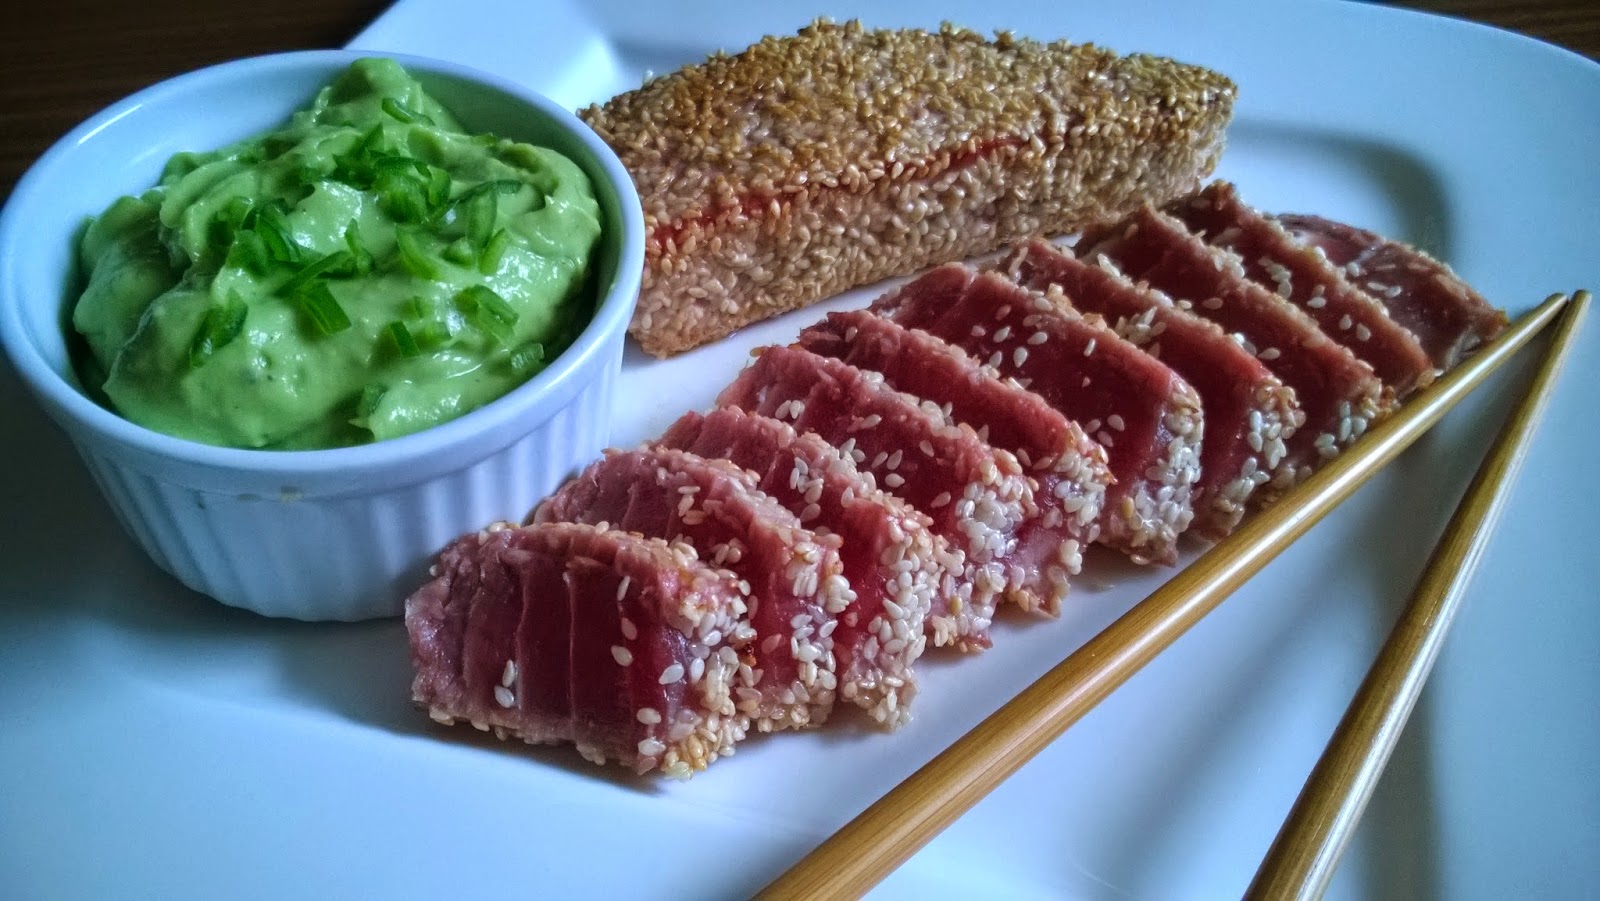 Thunfisch mit Sesamkruste und Avocado-Chili-Dip